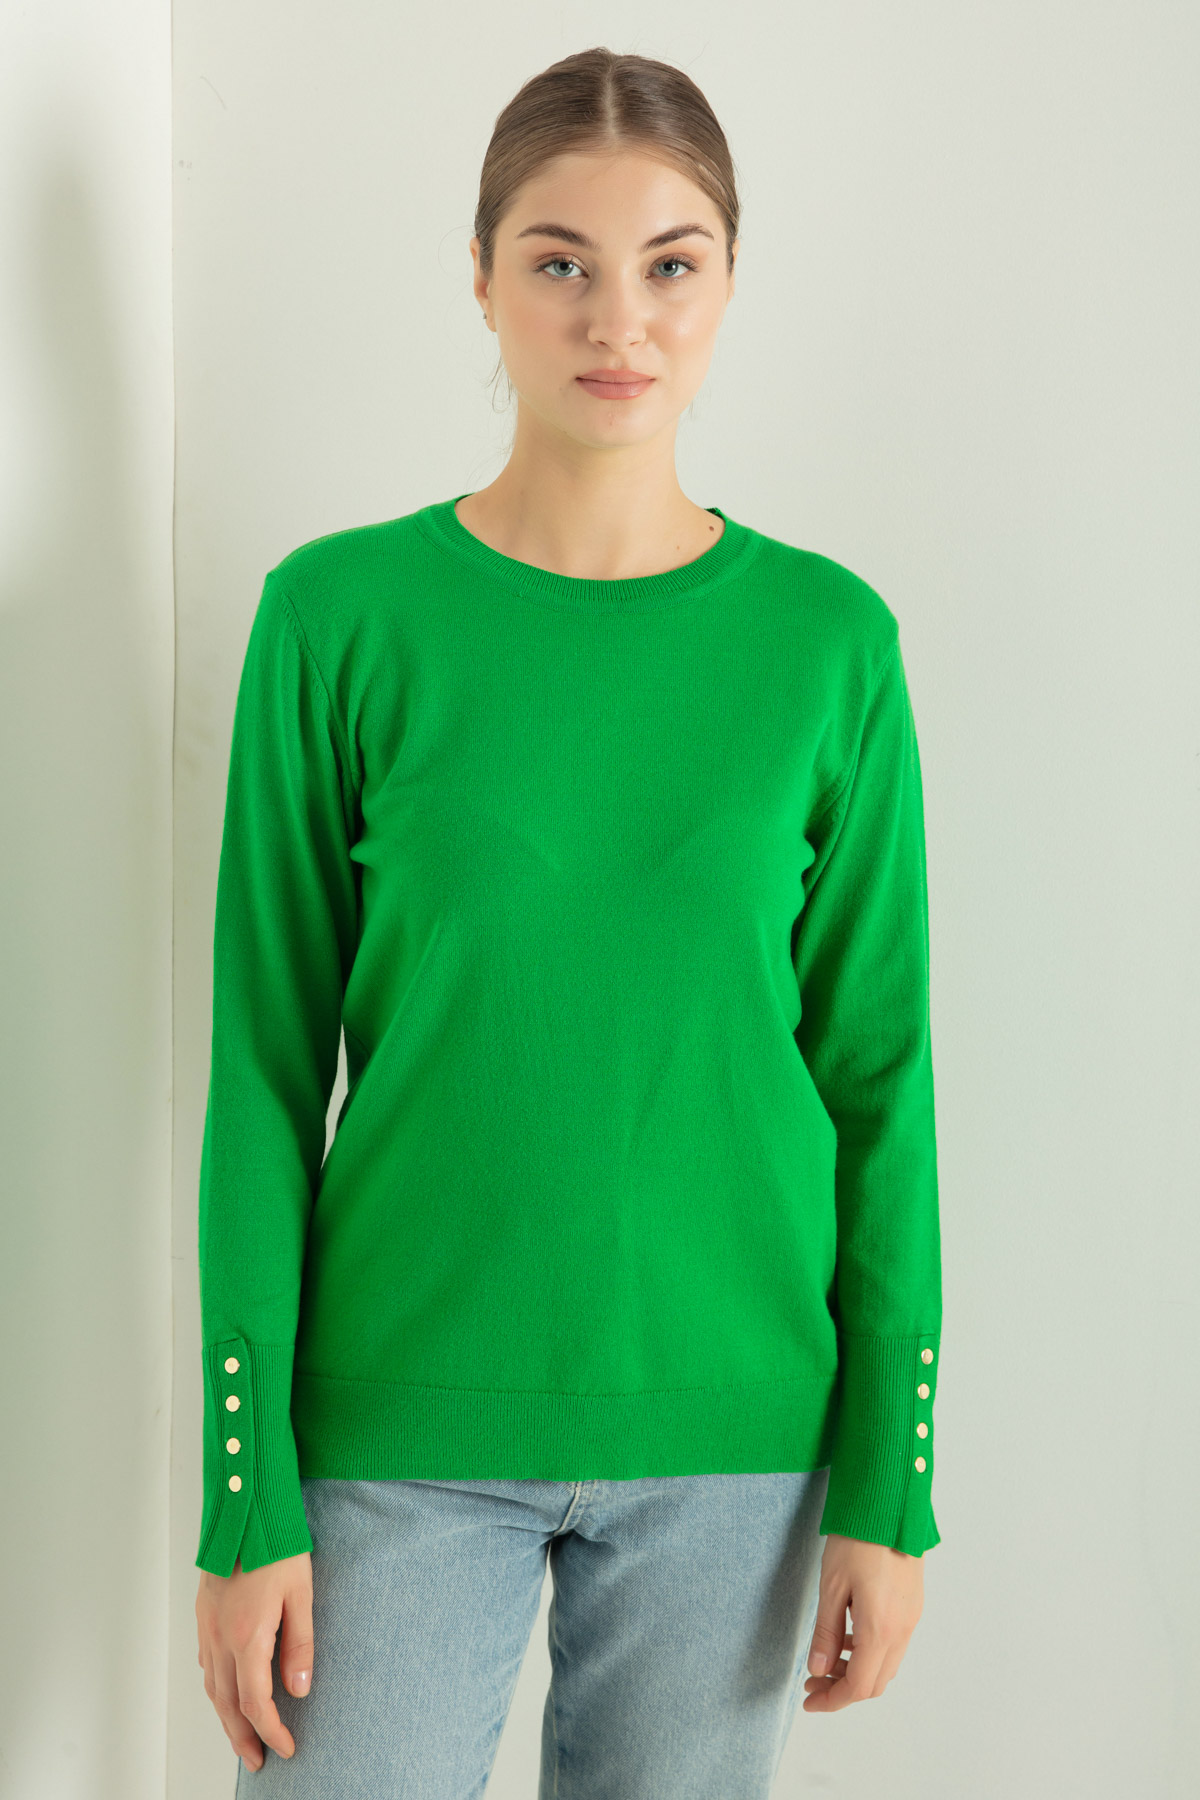 Women's Green Crew Neck Knitwear Sweater